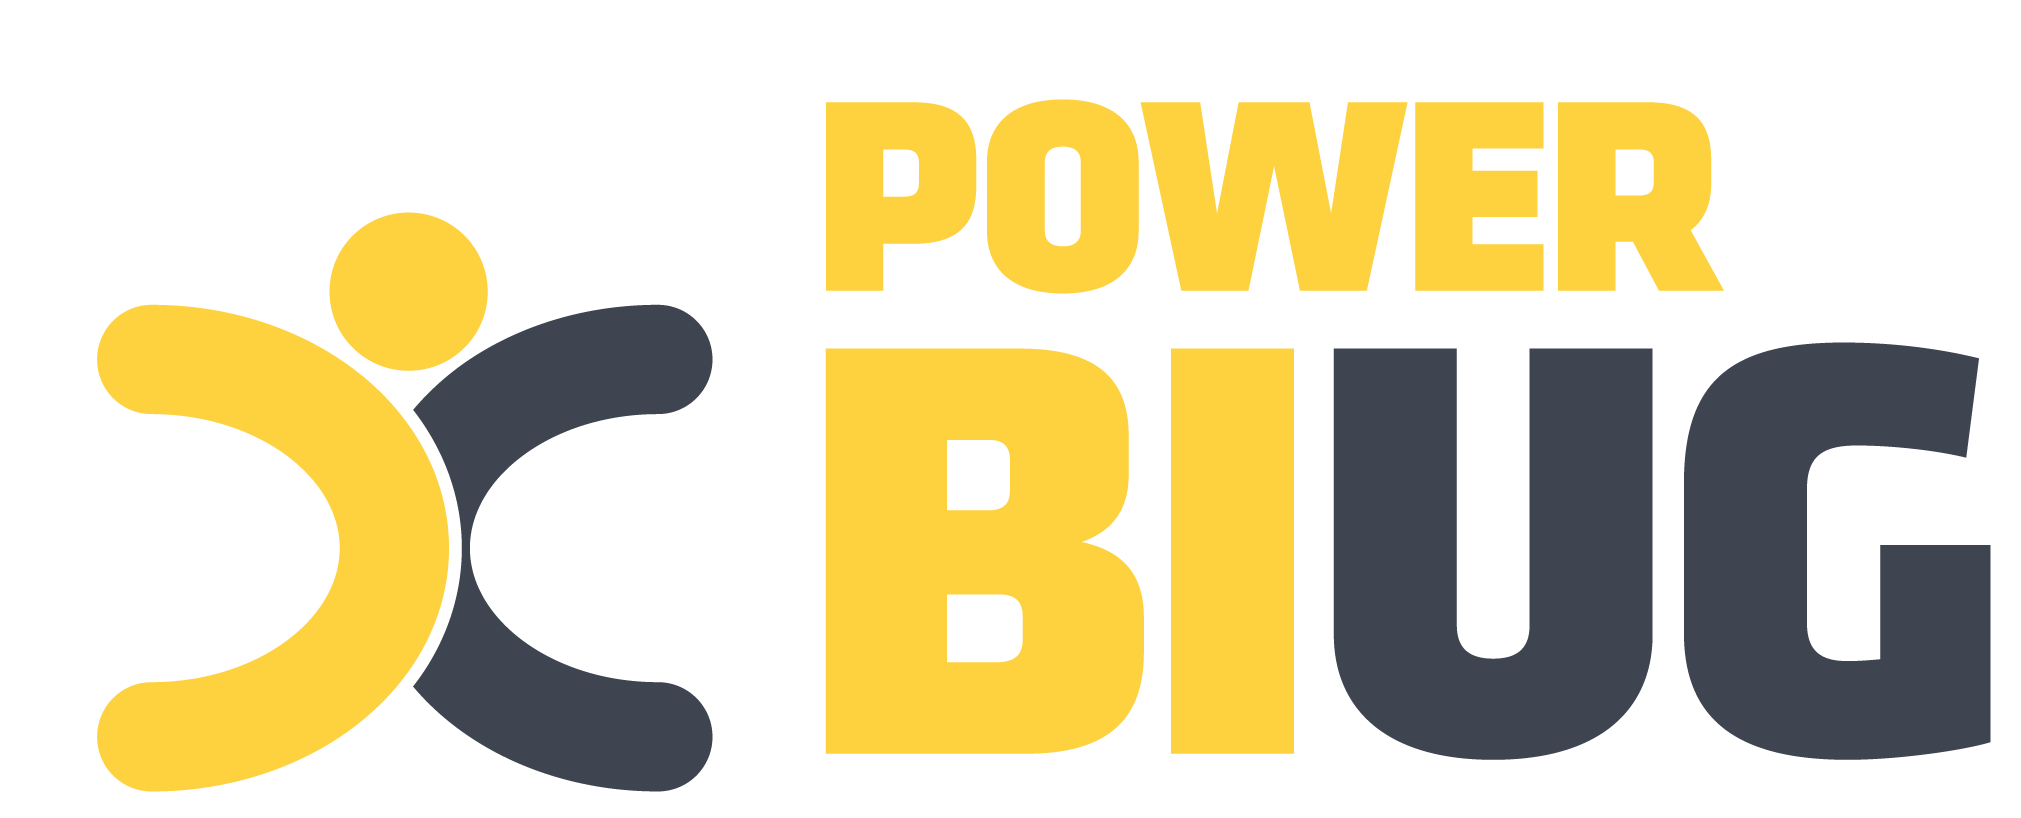 Power BI Logo - Home BI User Group